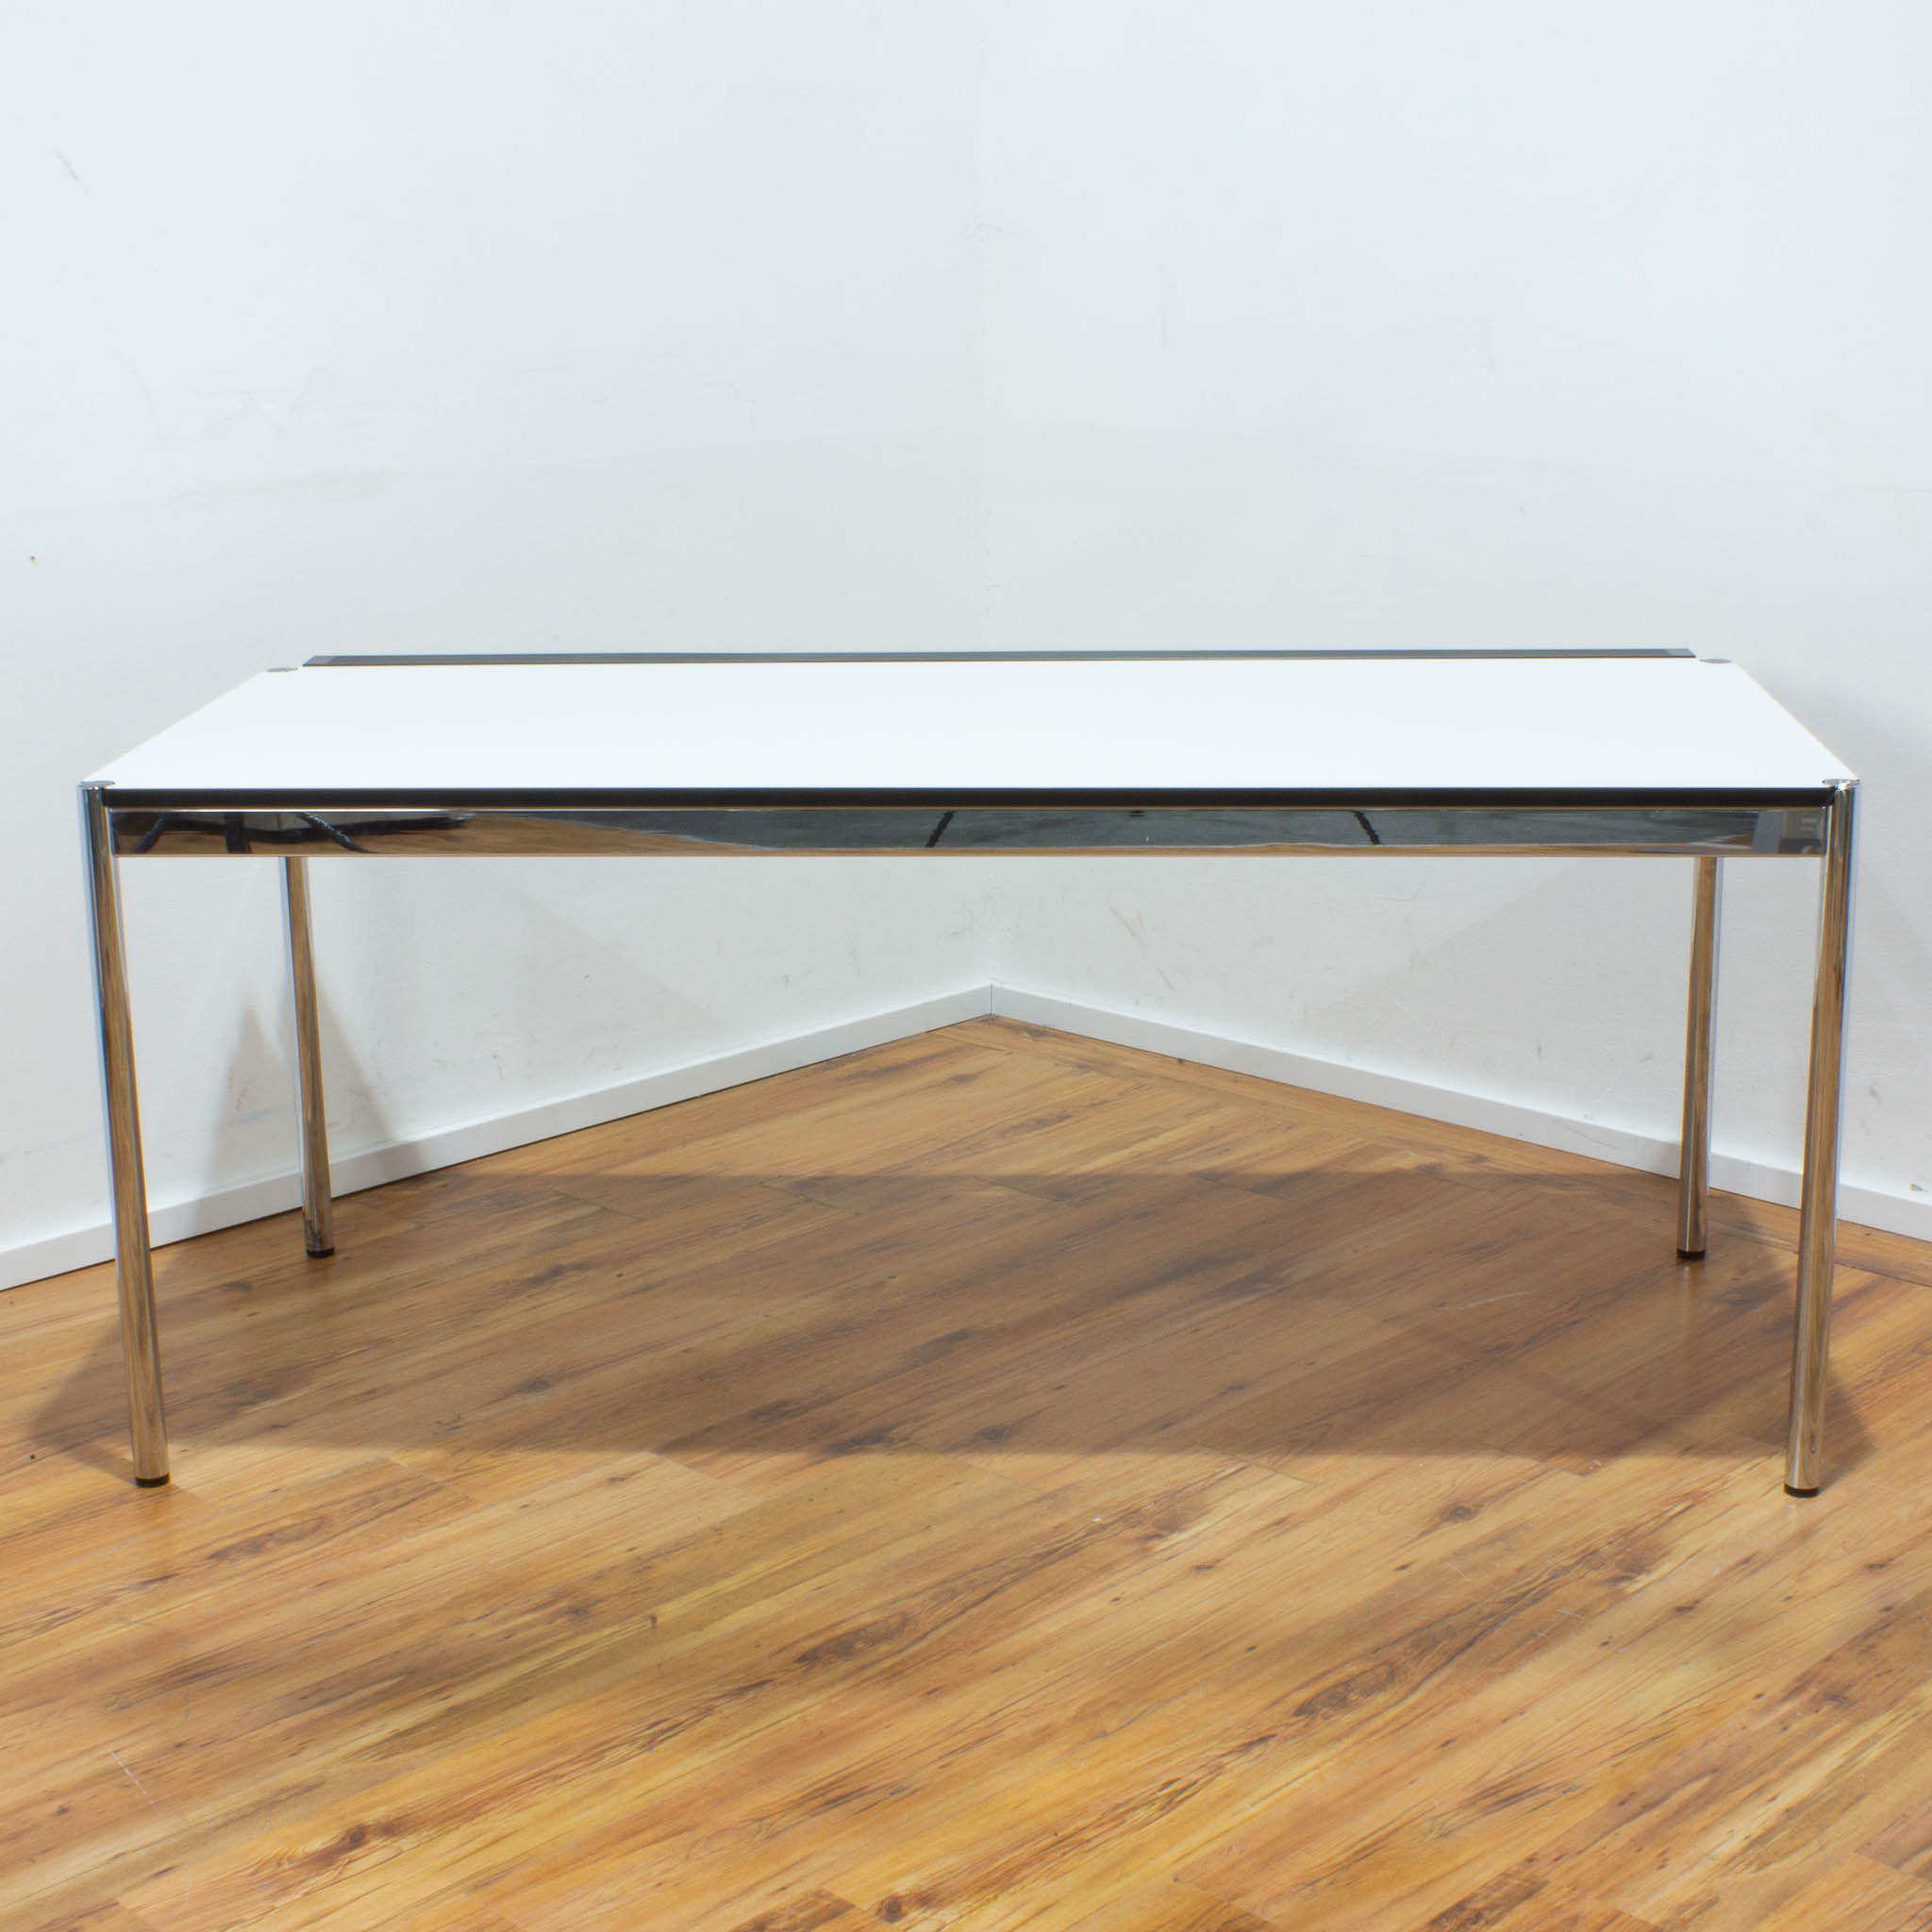 USM Haller Schreibtisch - Tischplatte weiß mit Kabalkanal an der Seite - gebraucht - 175 x 75 cm 